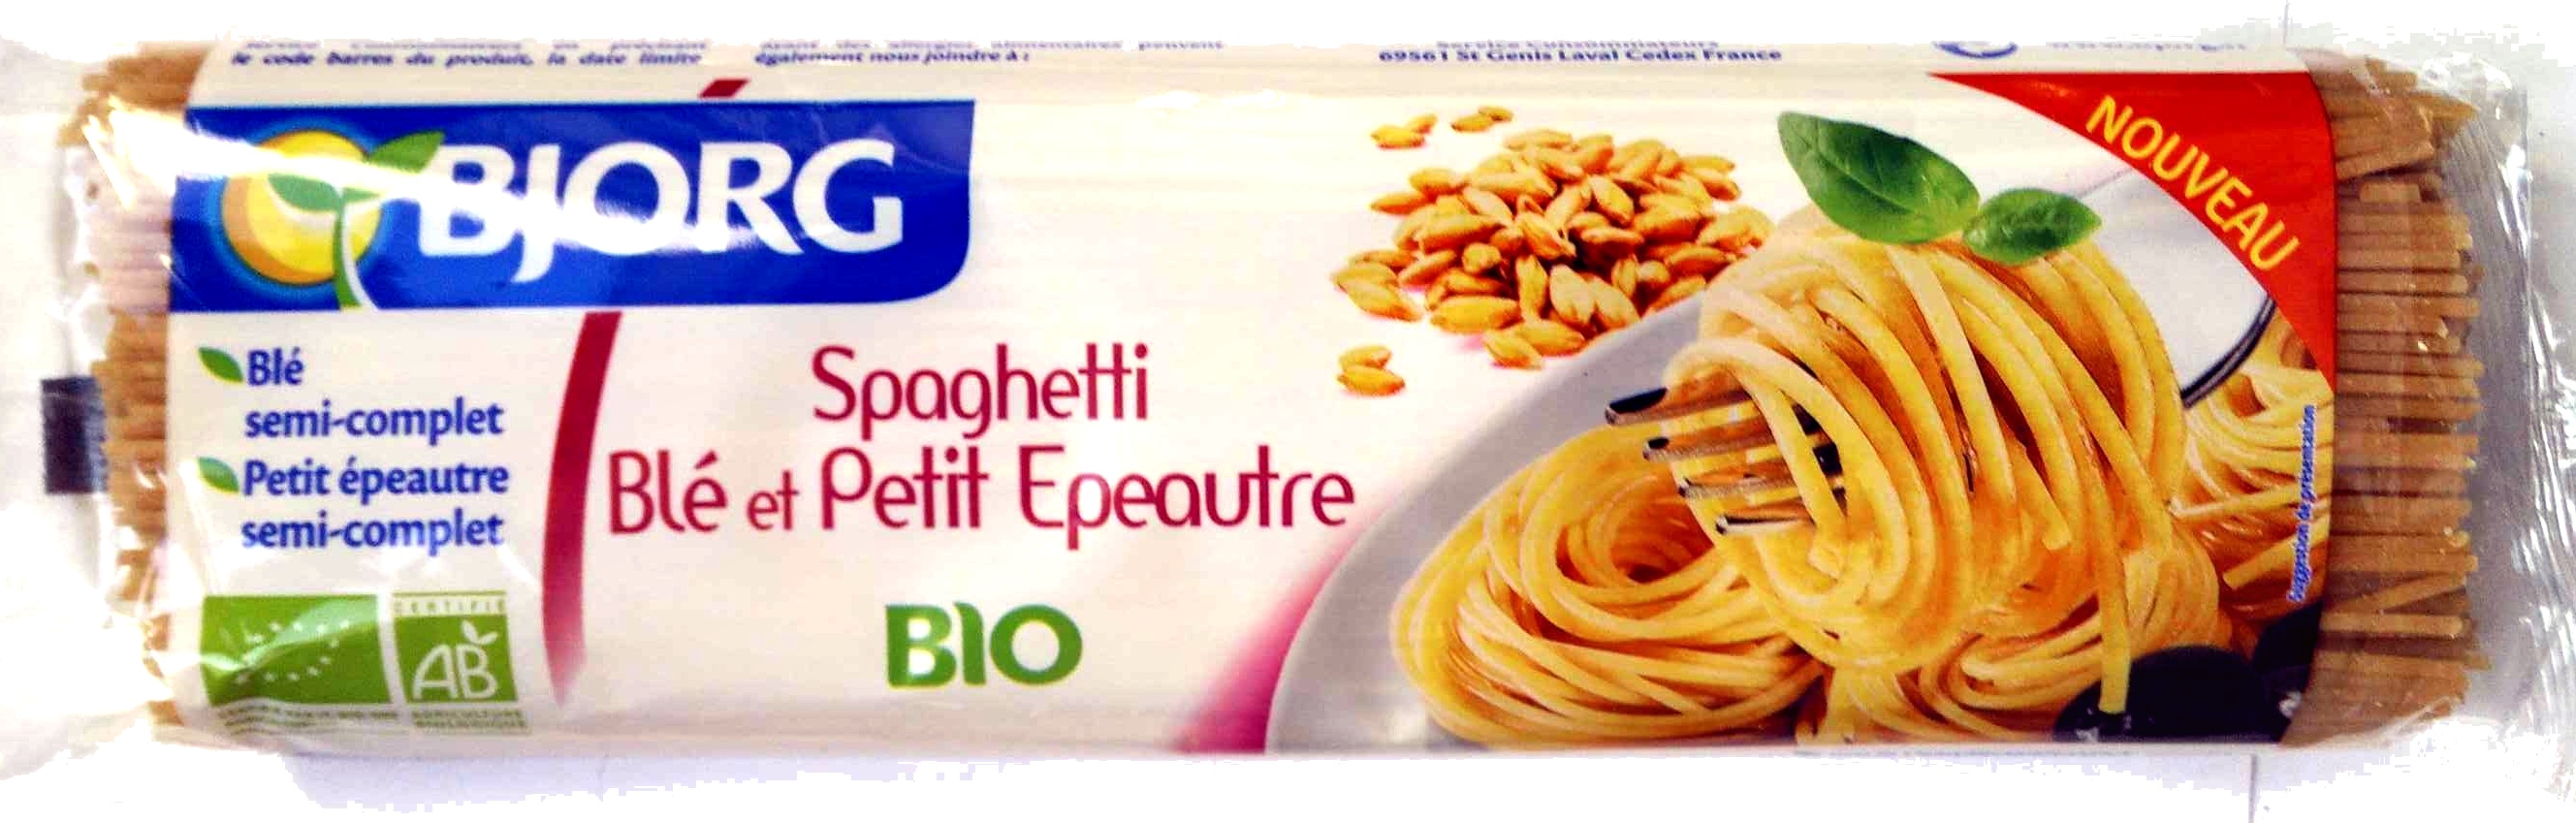 Spaghetti Blé et Petit Epeautre - نتاج - fr